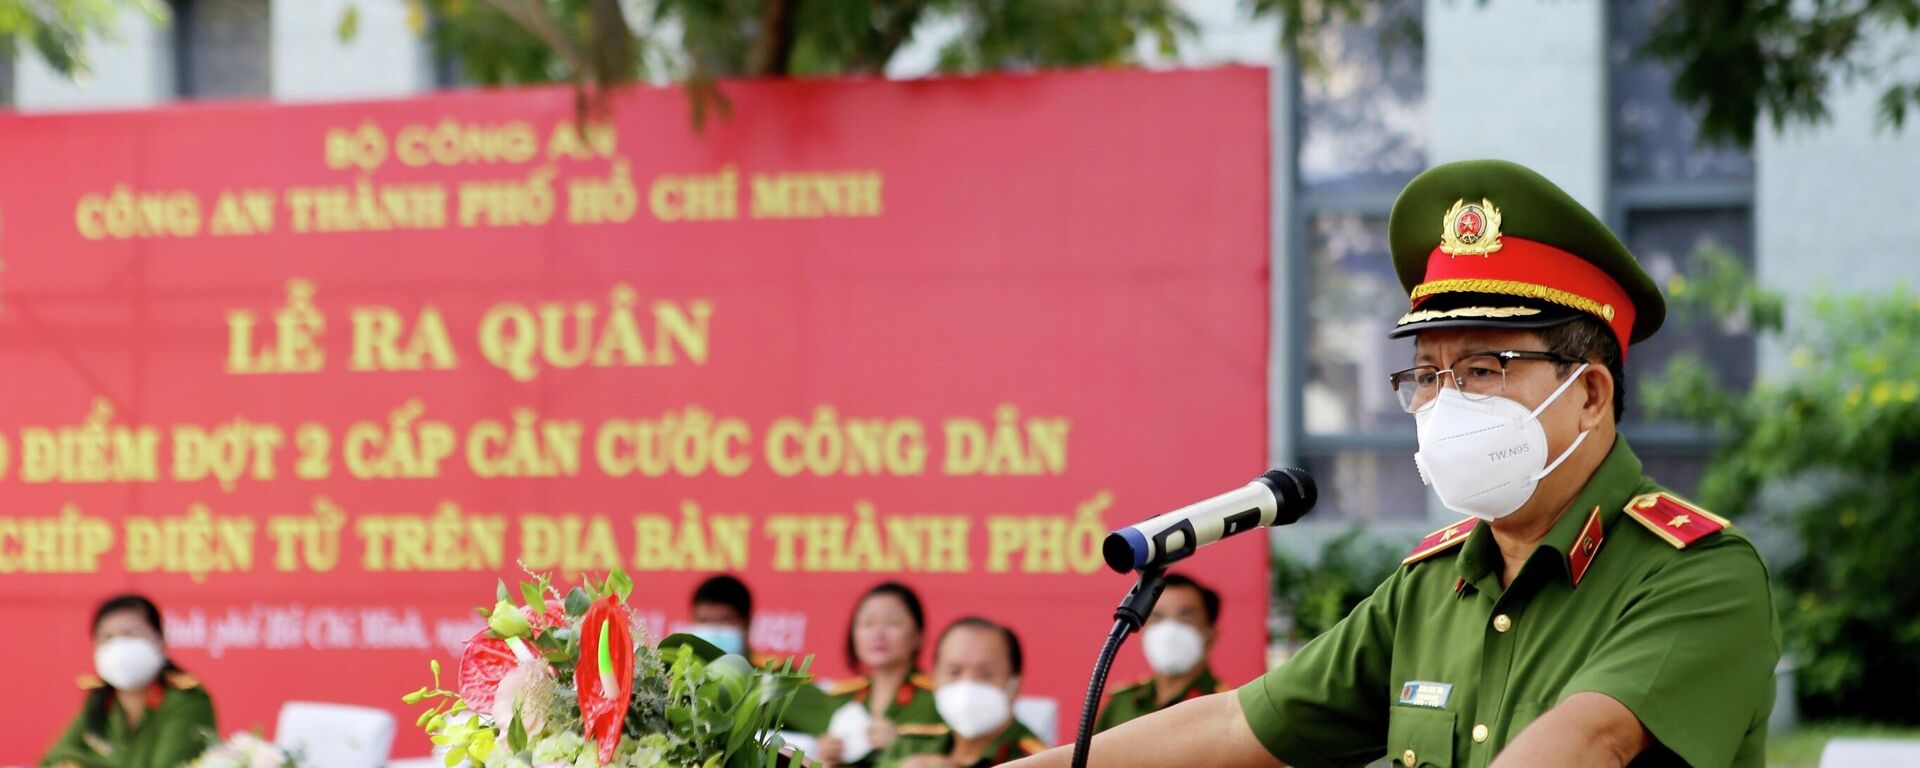 Thiếu tướng Trần Đức Tài, Phó Giám đốc Công an Thành phố Hồ Chí Minh phát biểu tại Lễ ra quân. - Sputnik Việt Nam, 1920, 05.11.2021